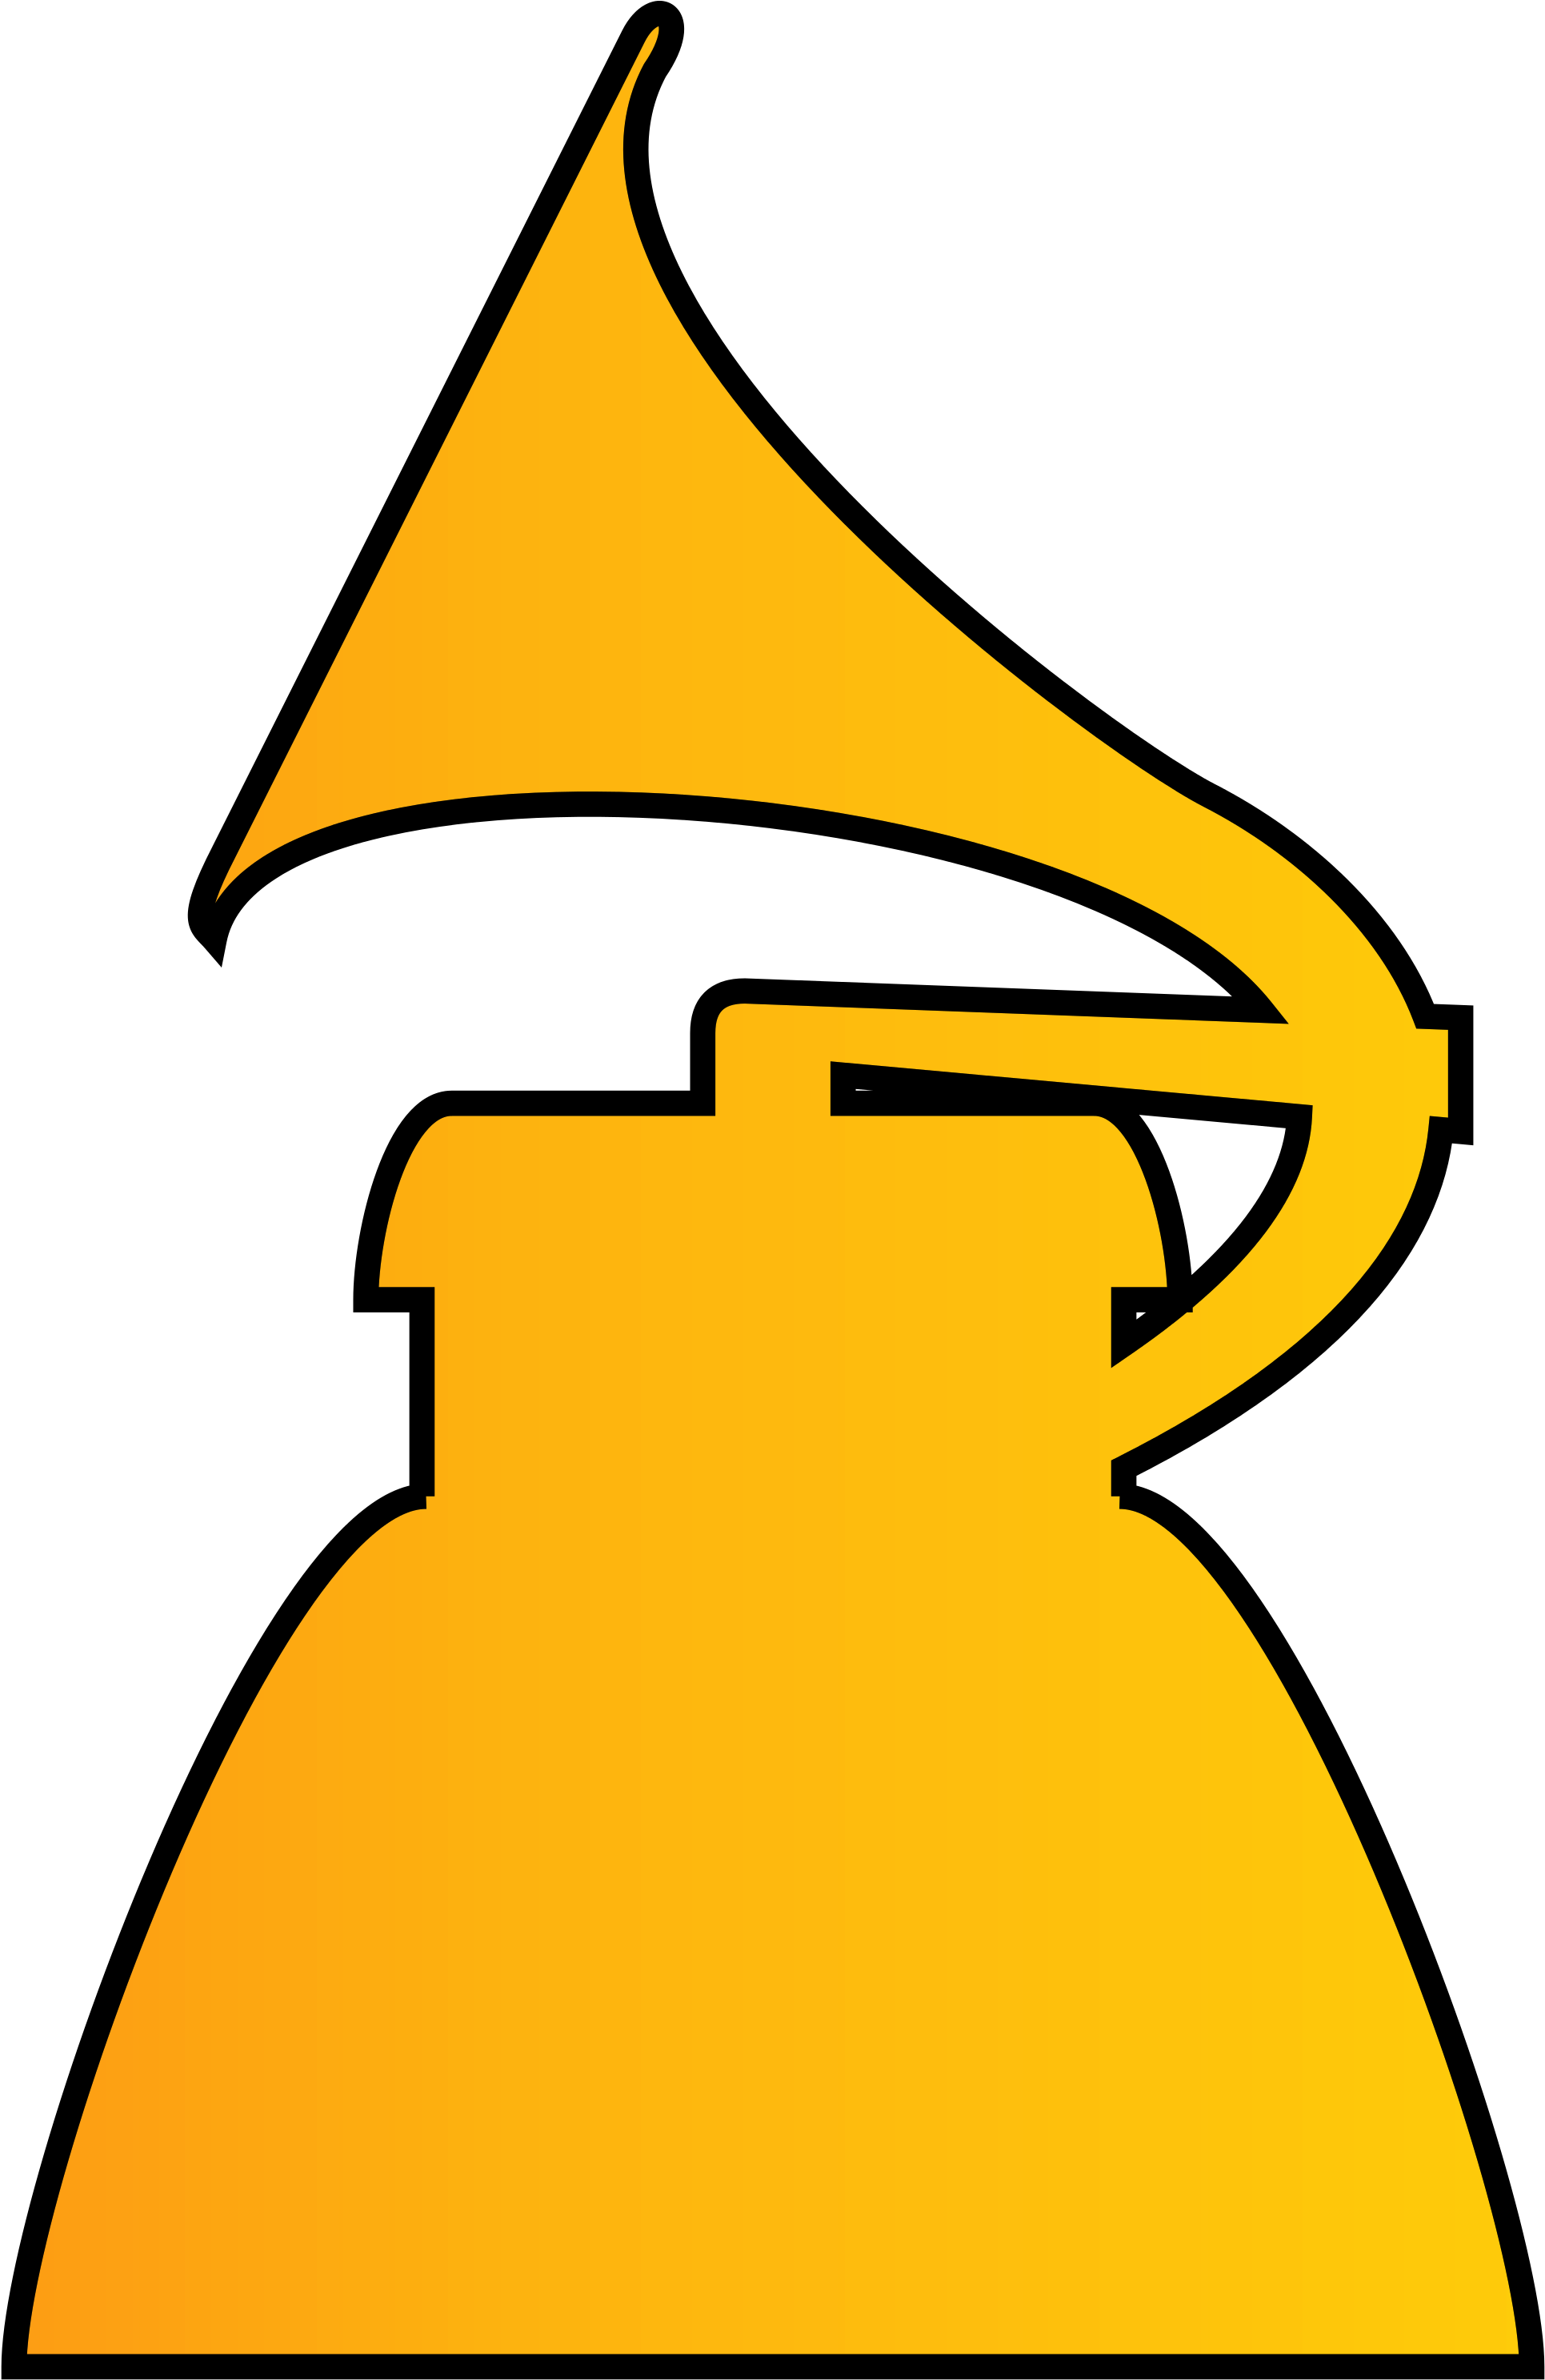 Grammy Awards Trophy PNG Image